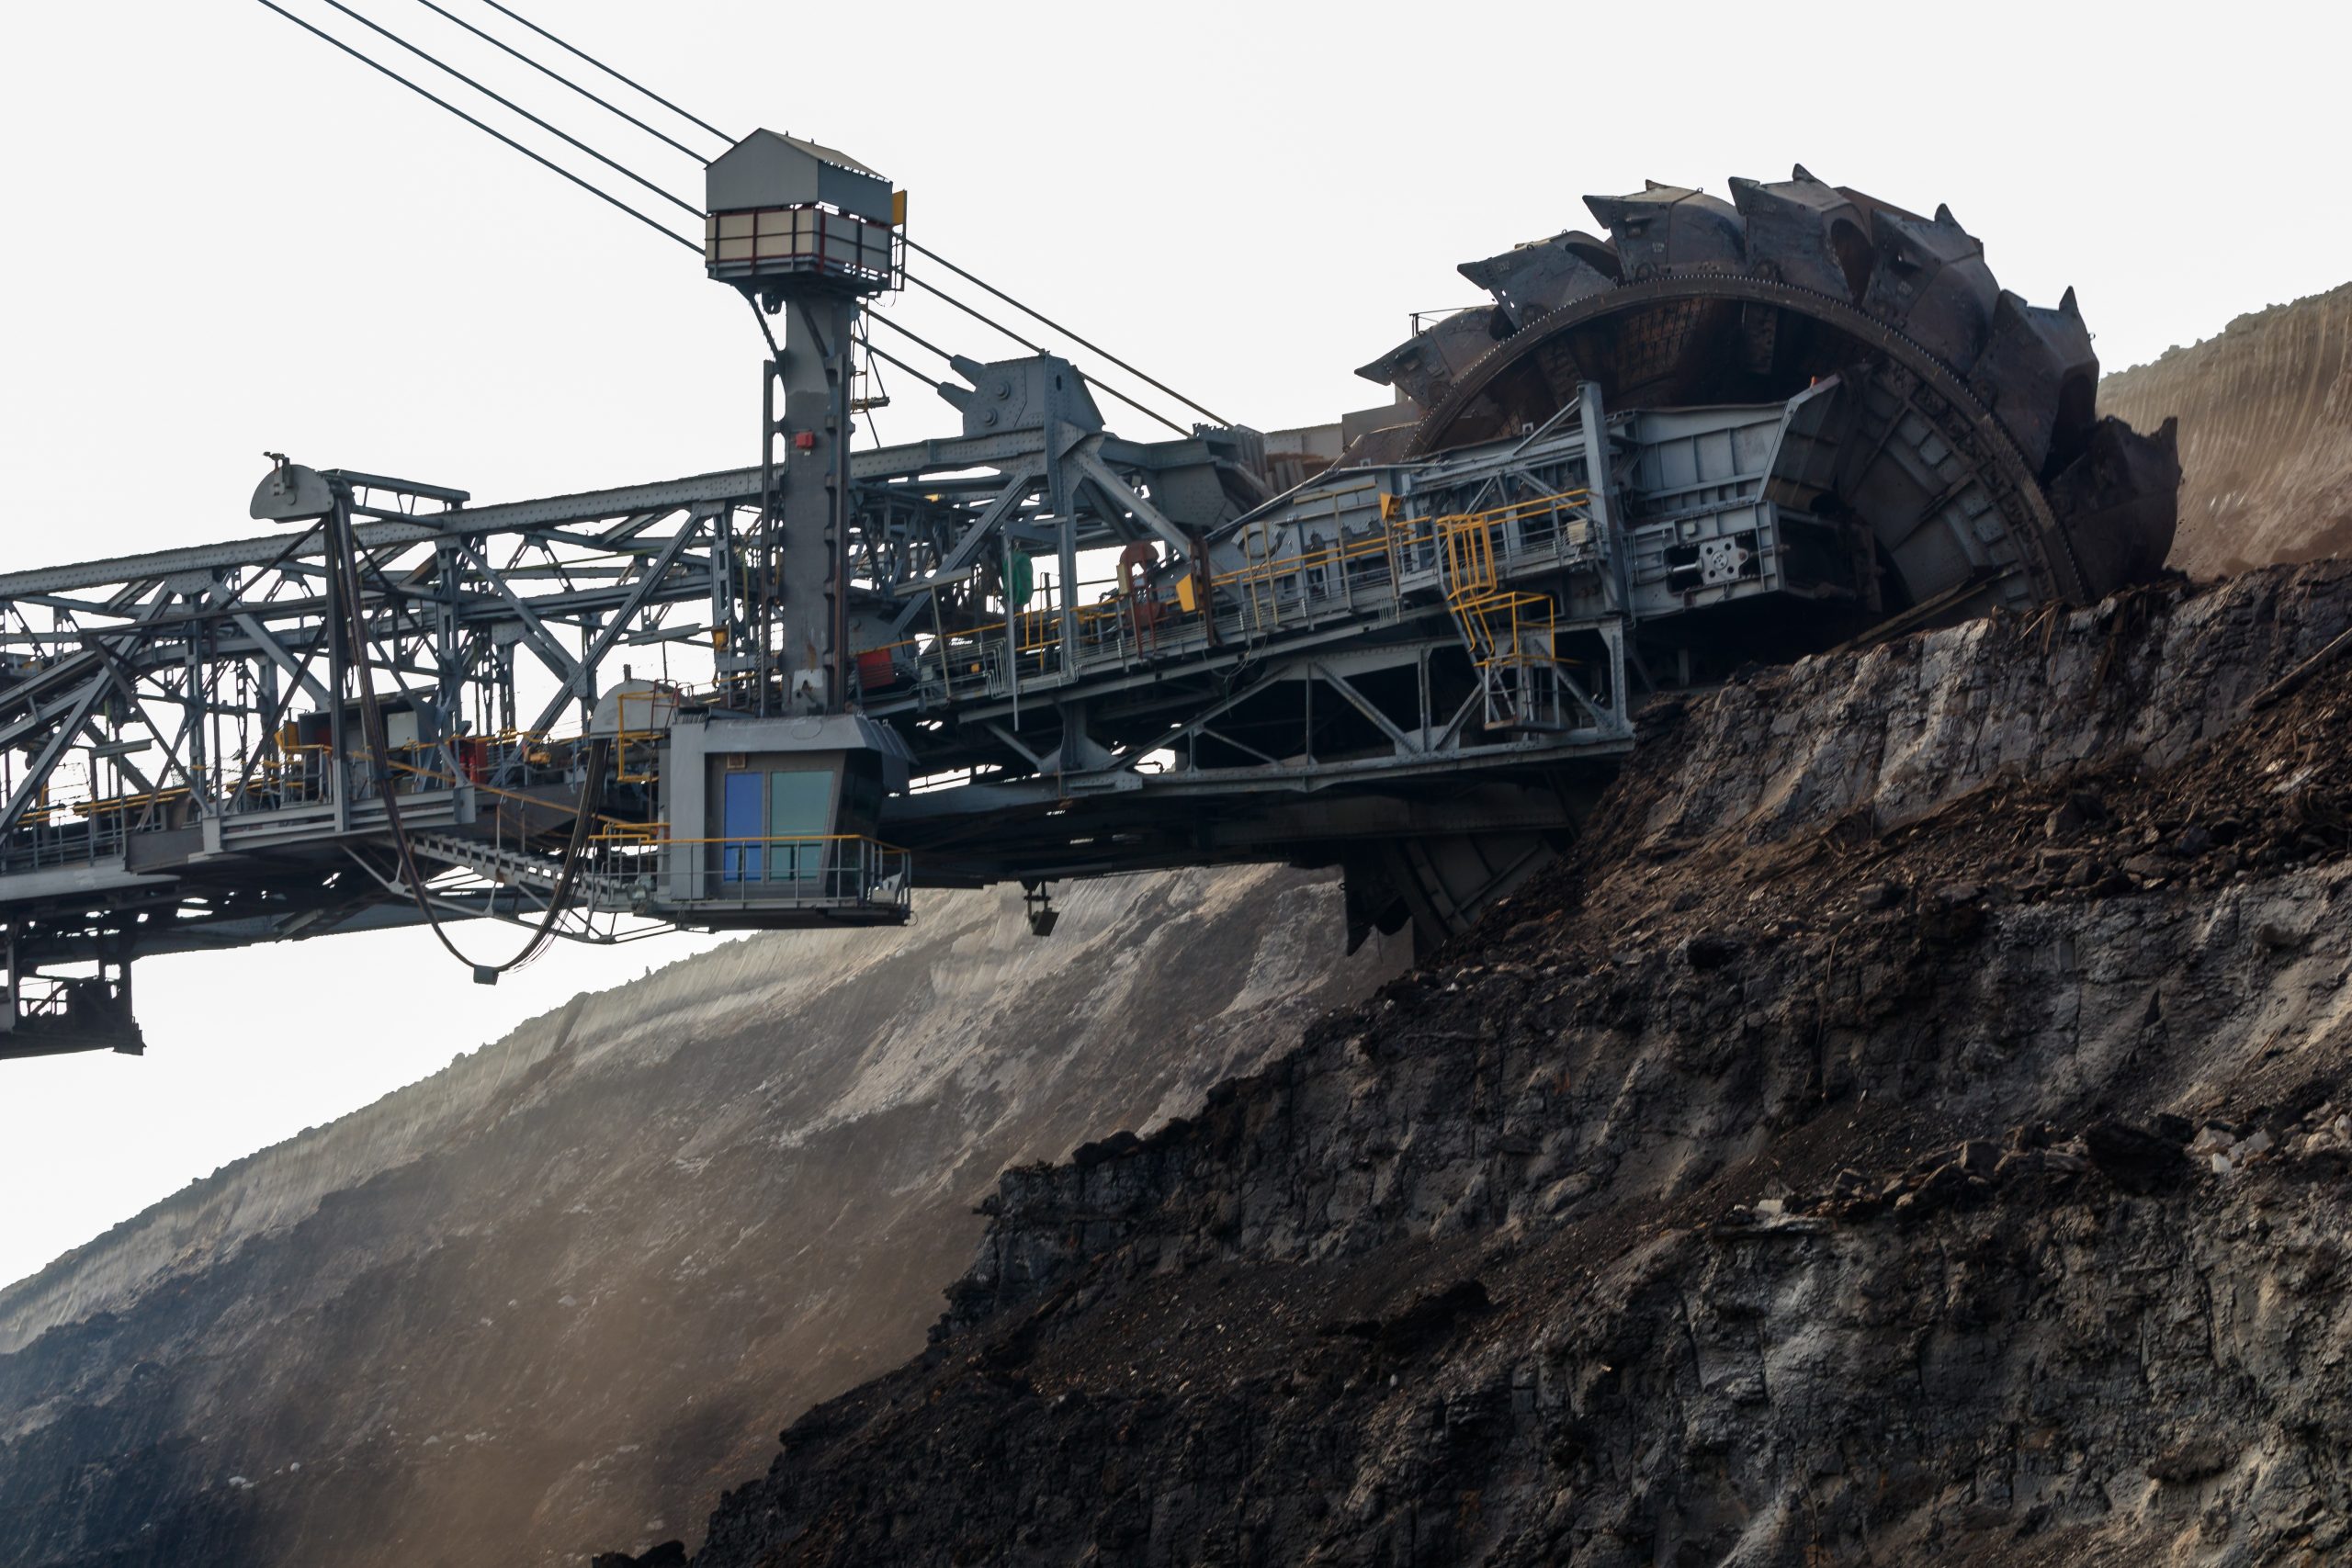 More information about "Σε πυρετώδη λειτουργία τα ορυχεία εξόρυξης λιγνίτη στη Δυτική Μακεδονία"